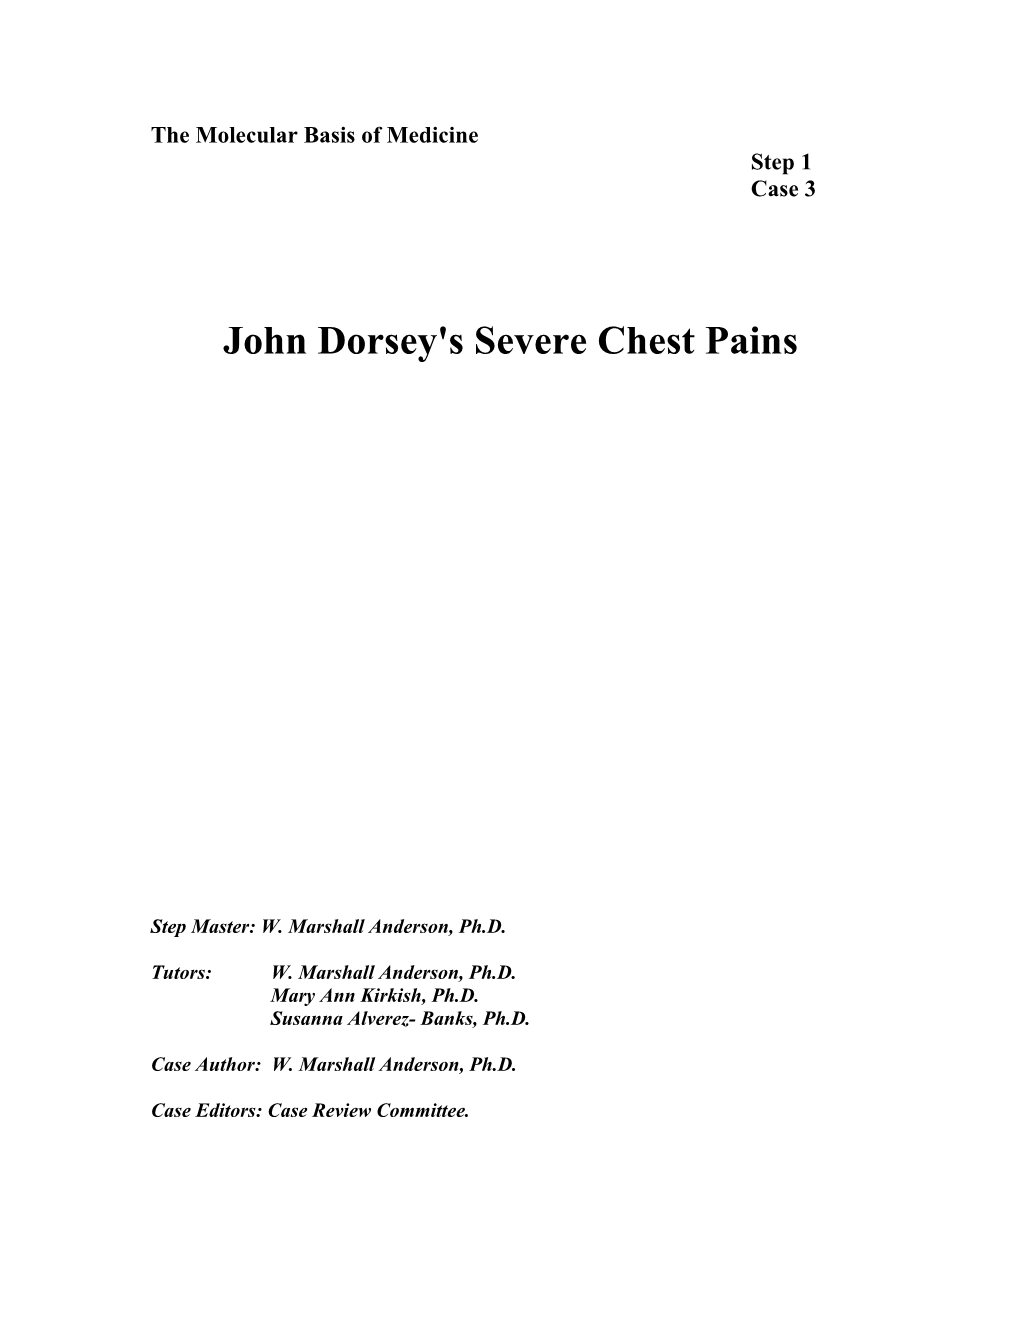 John Dorsey's Severe Chest Pains